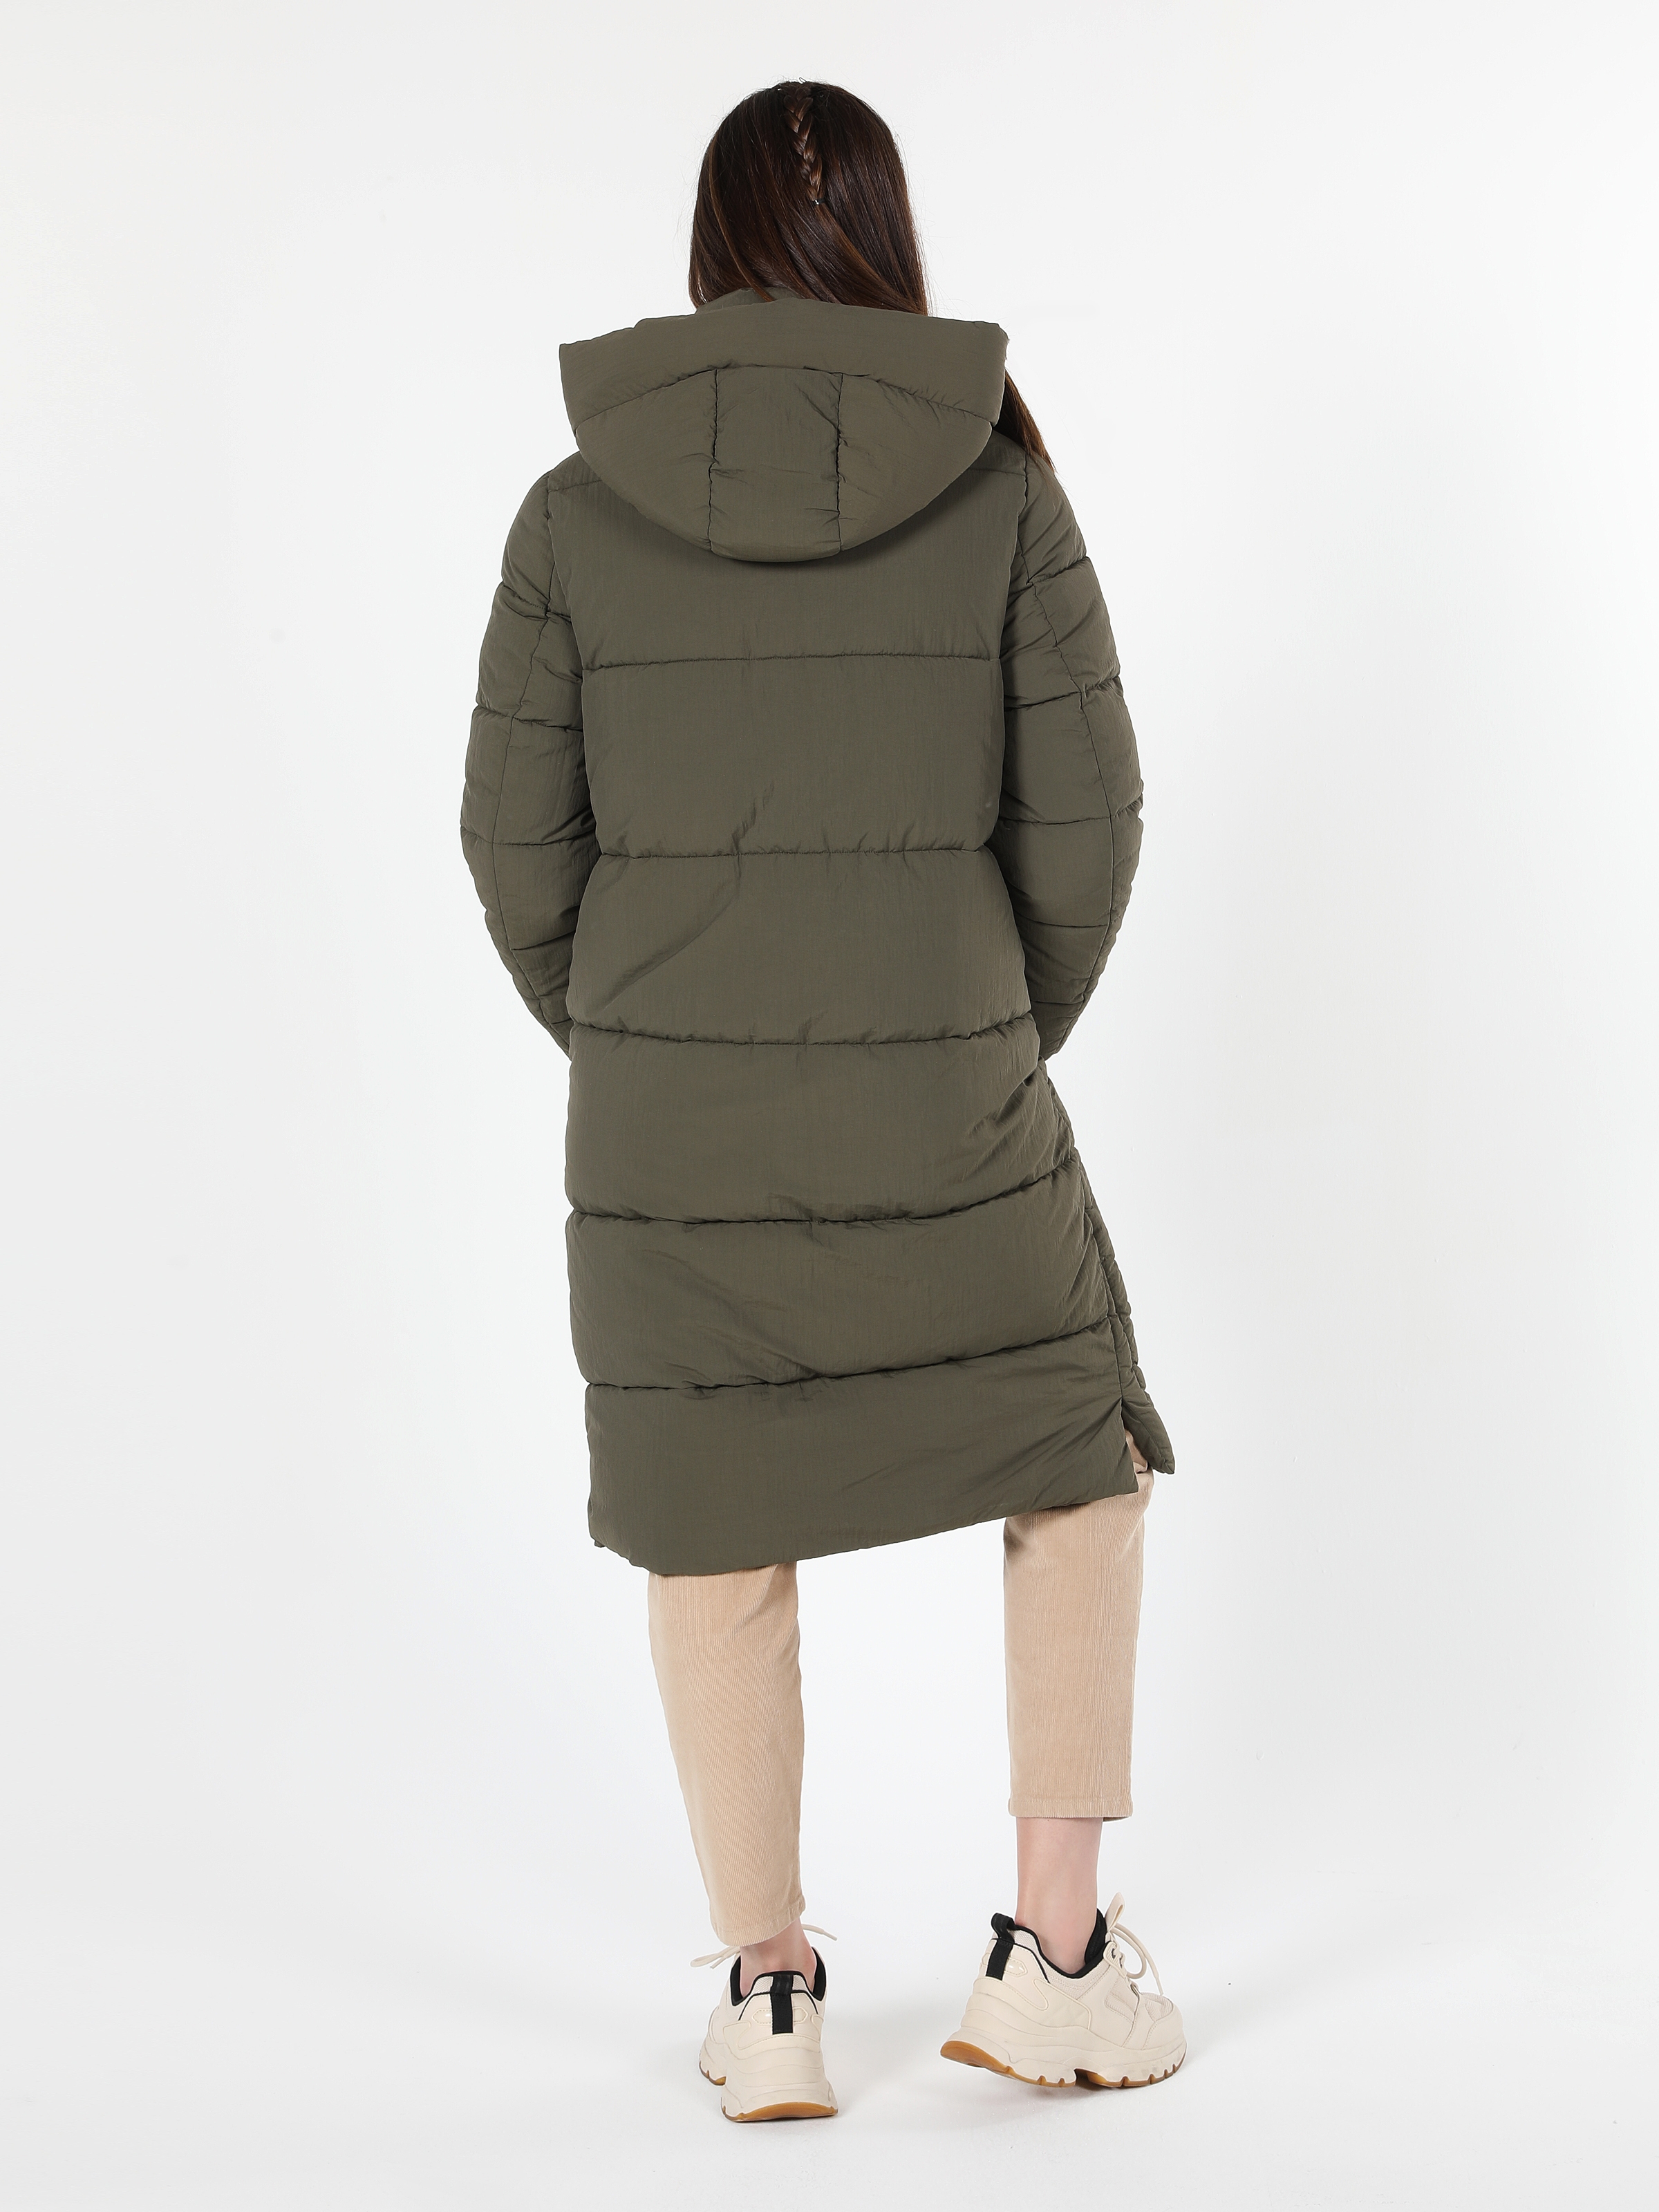 Показати інформацію про Пальто Жіноче Зелене Довге Класичного Крою   Cl1060955